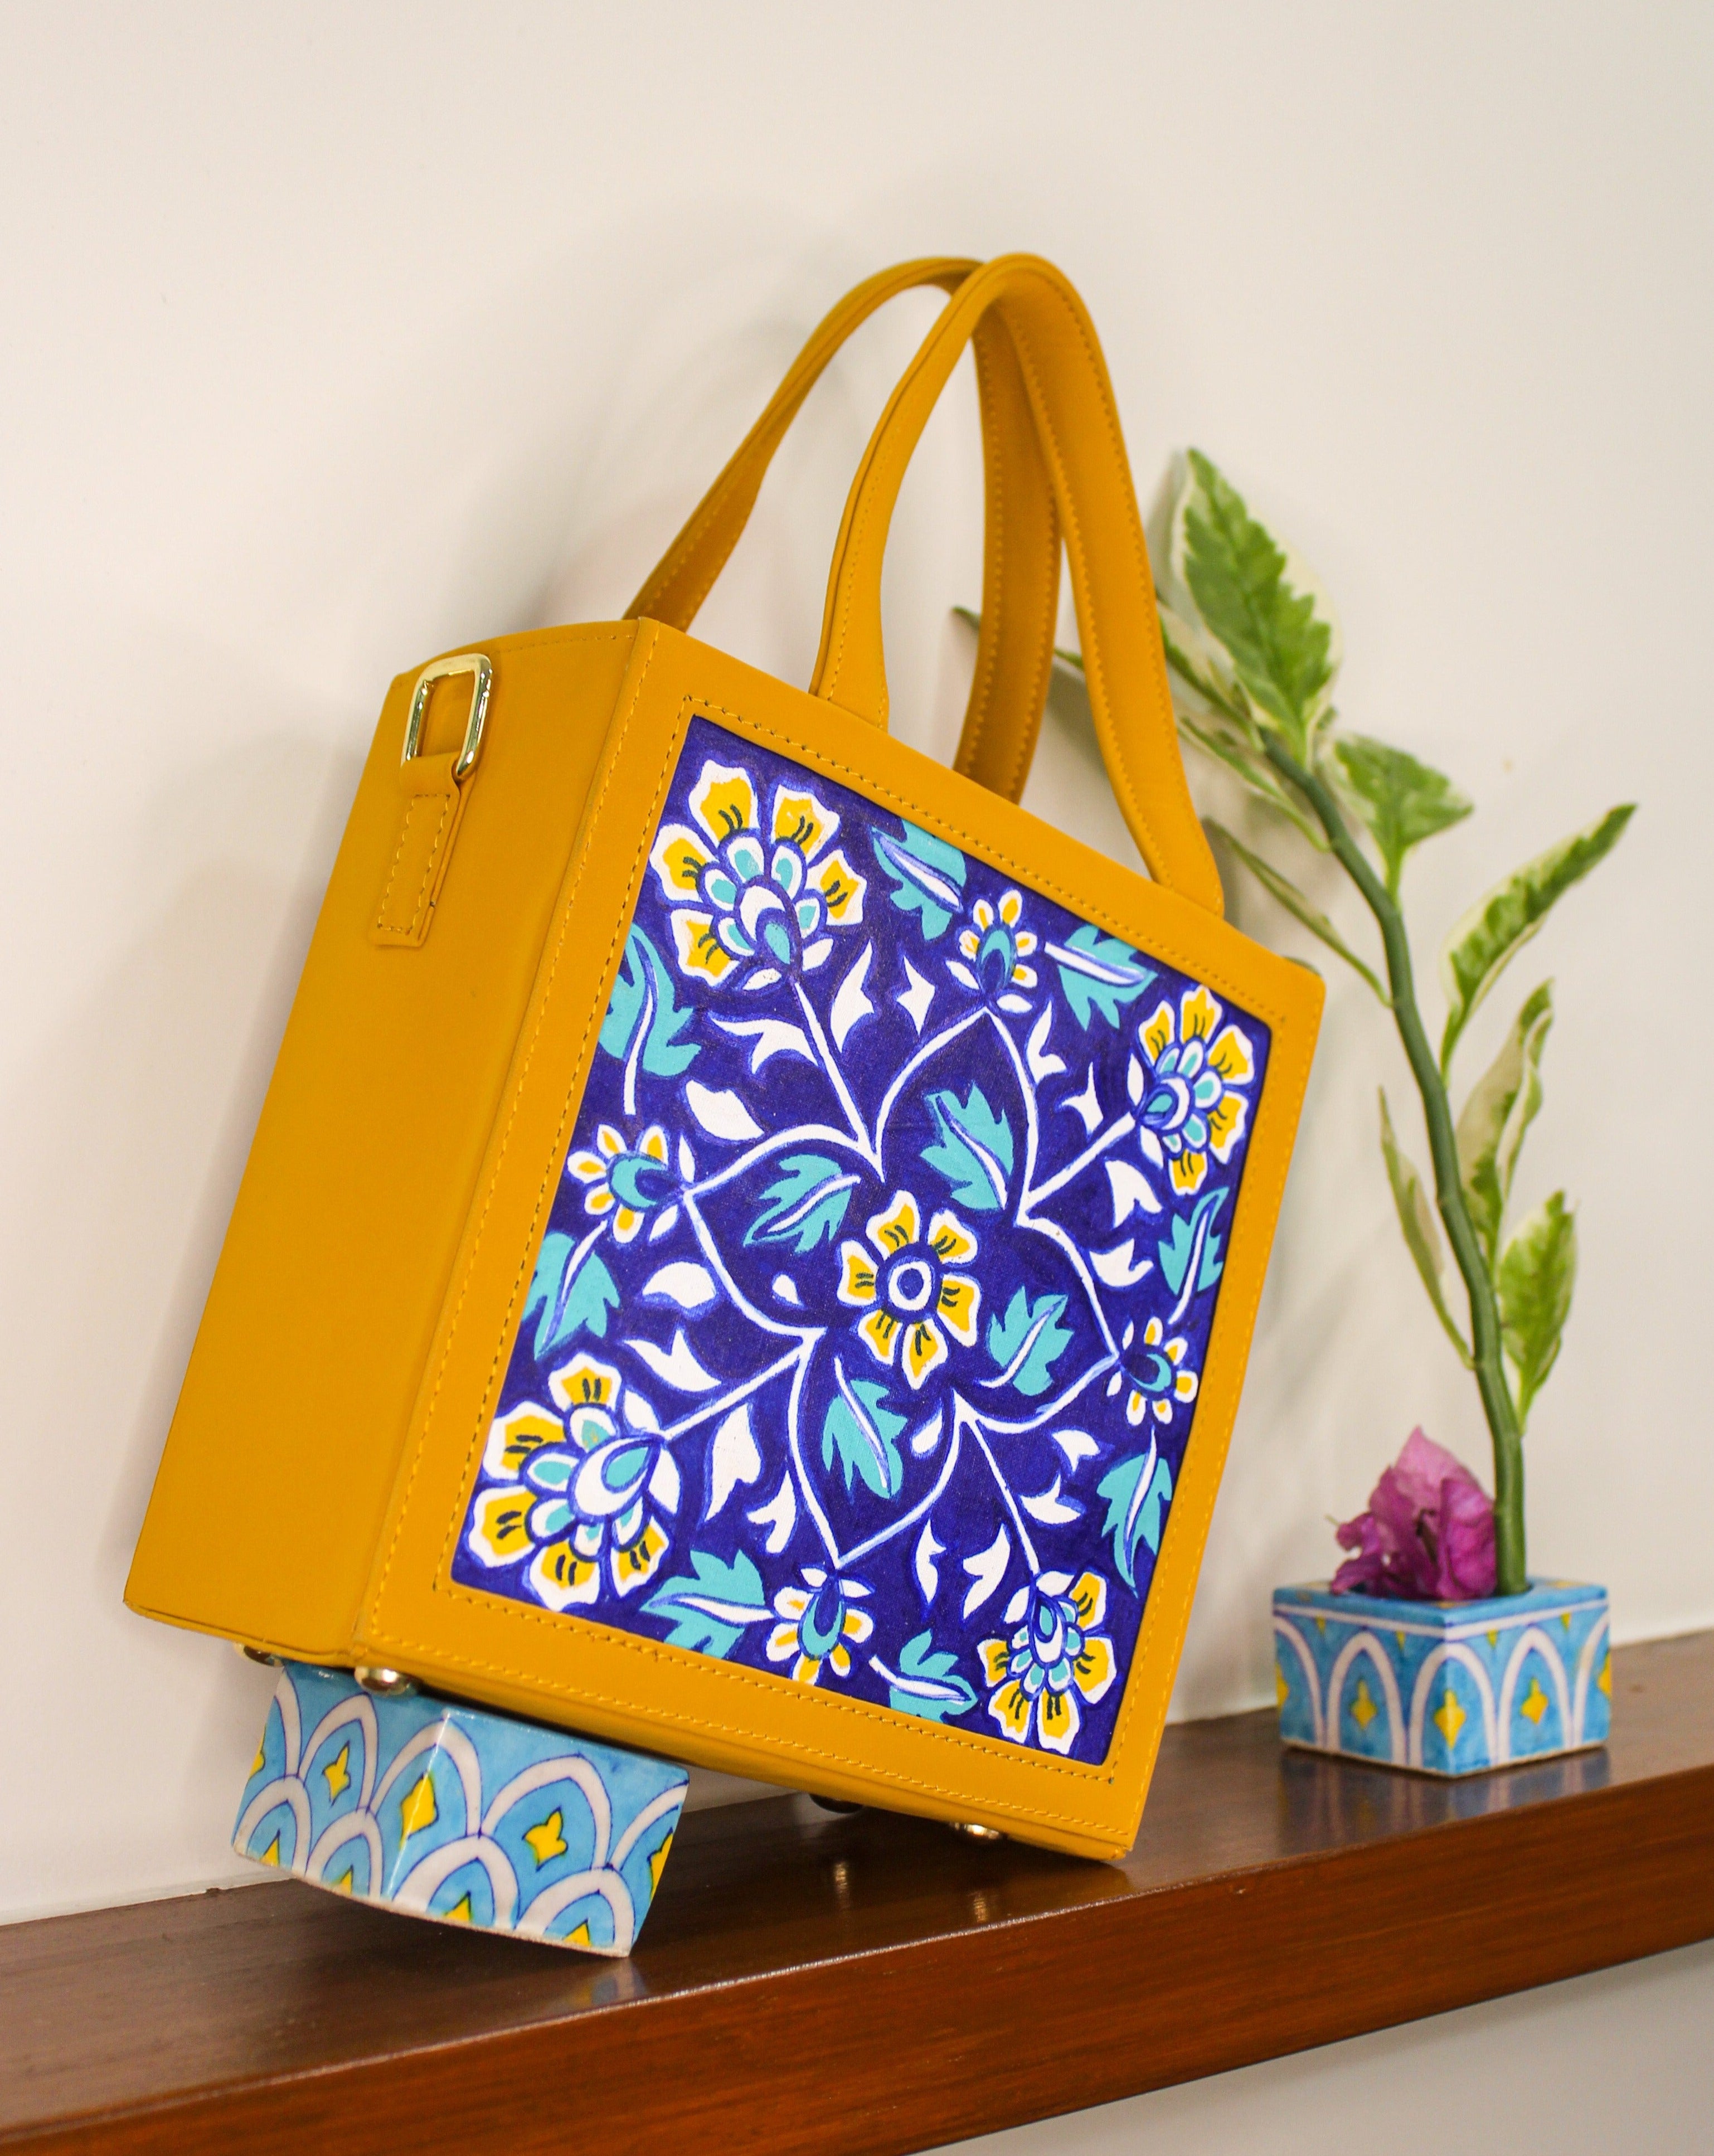 Pop lips | Hand painted bags handbags, Painted handbag, Handpainted bags